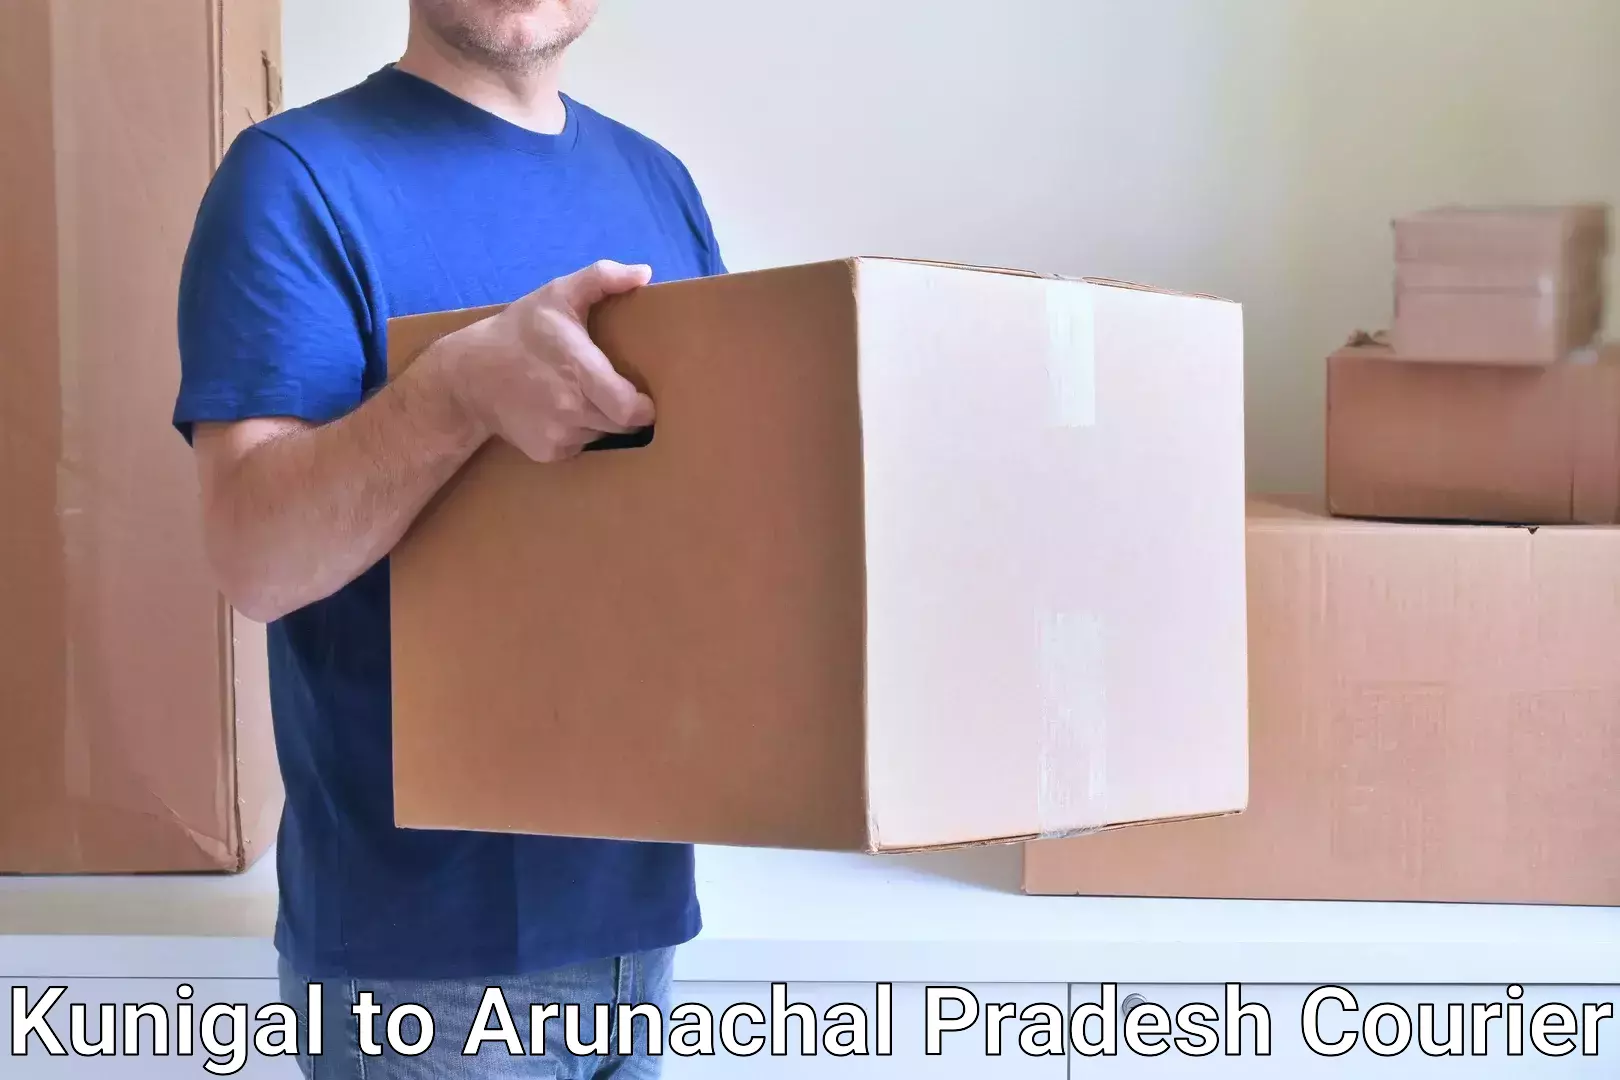 Express package handling in Kunigal to Arunachal Pradesh